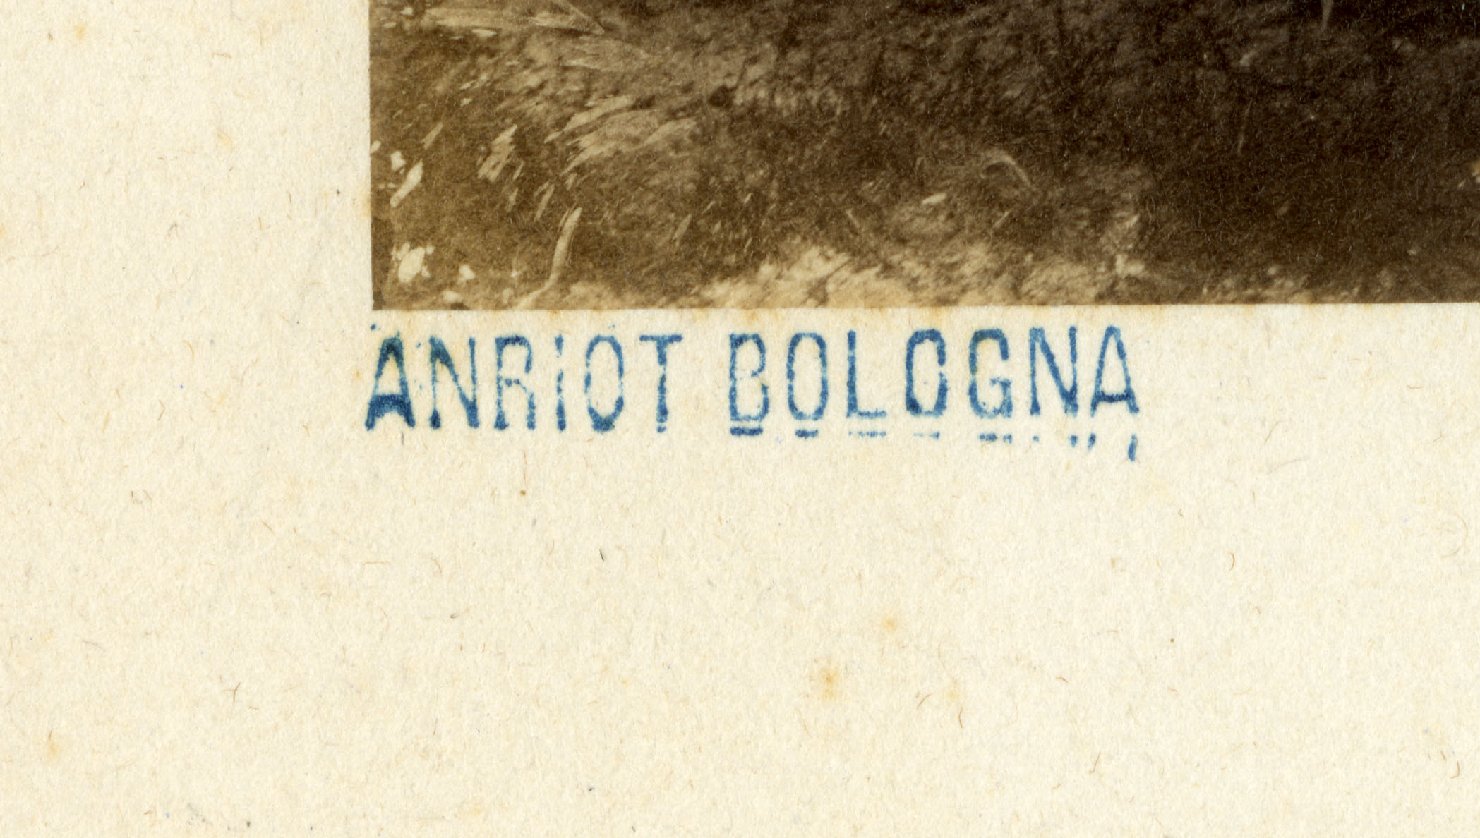 Italia – Emilia Romagna - Bologna (positivo) di Anriot, Emile (terzo quarto XIX)